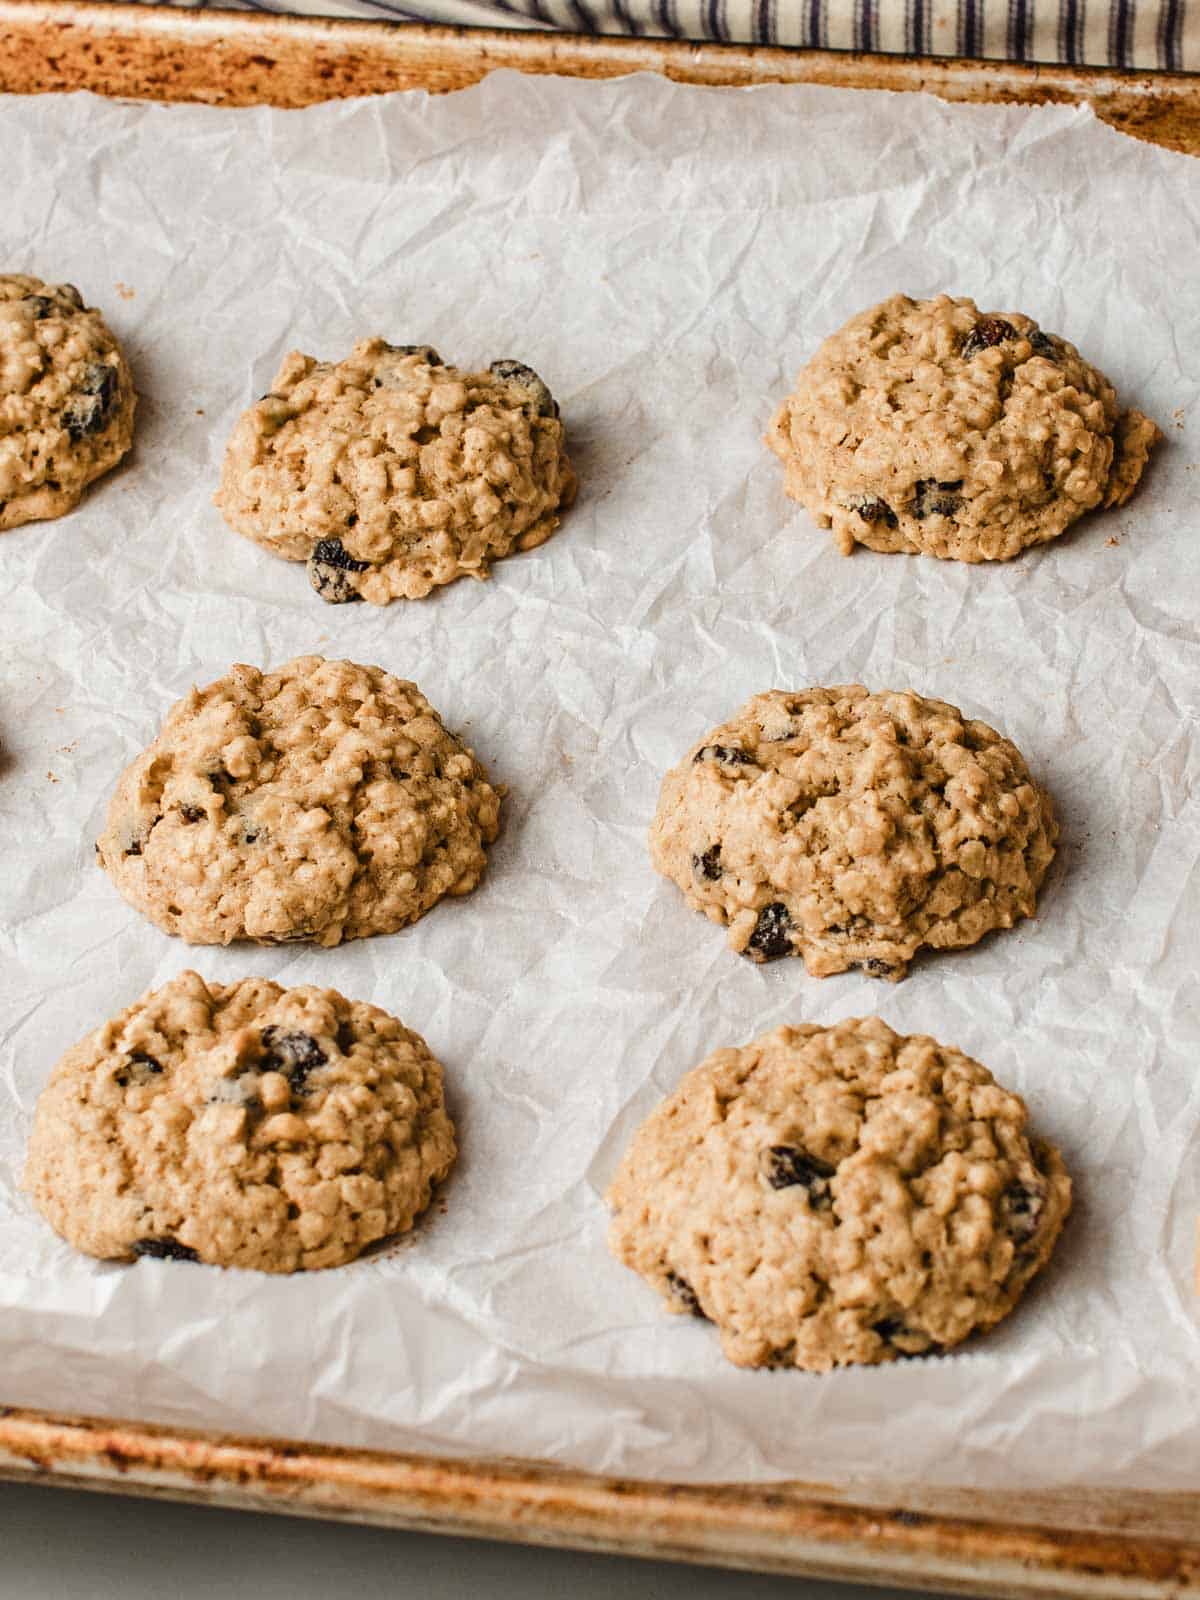 Sourdough oatmeal raisin cookies on a baking sheet.